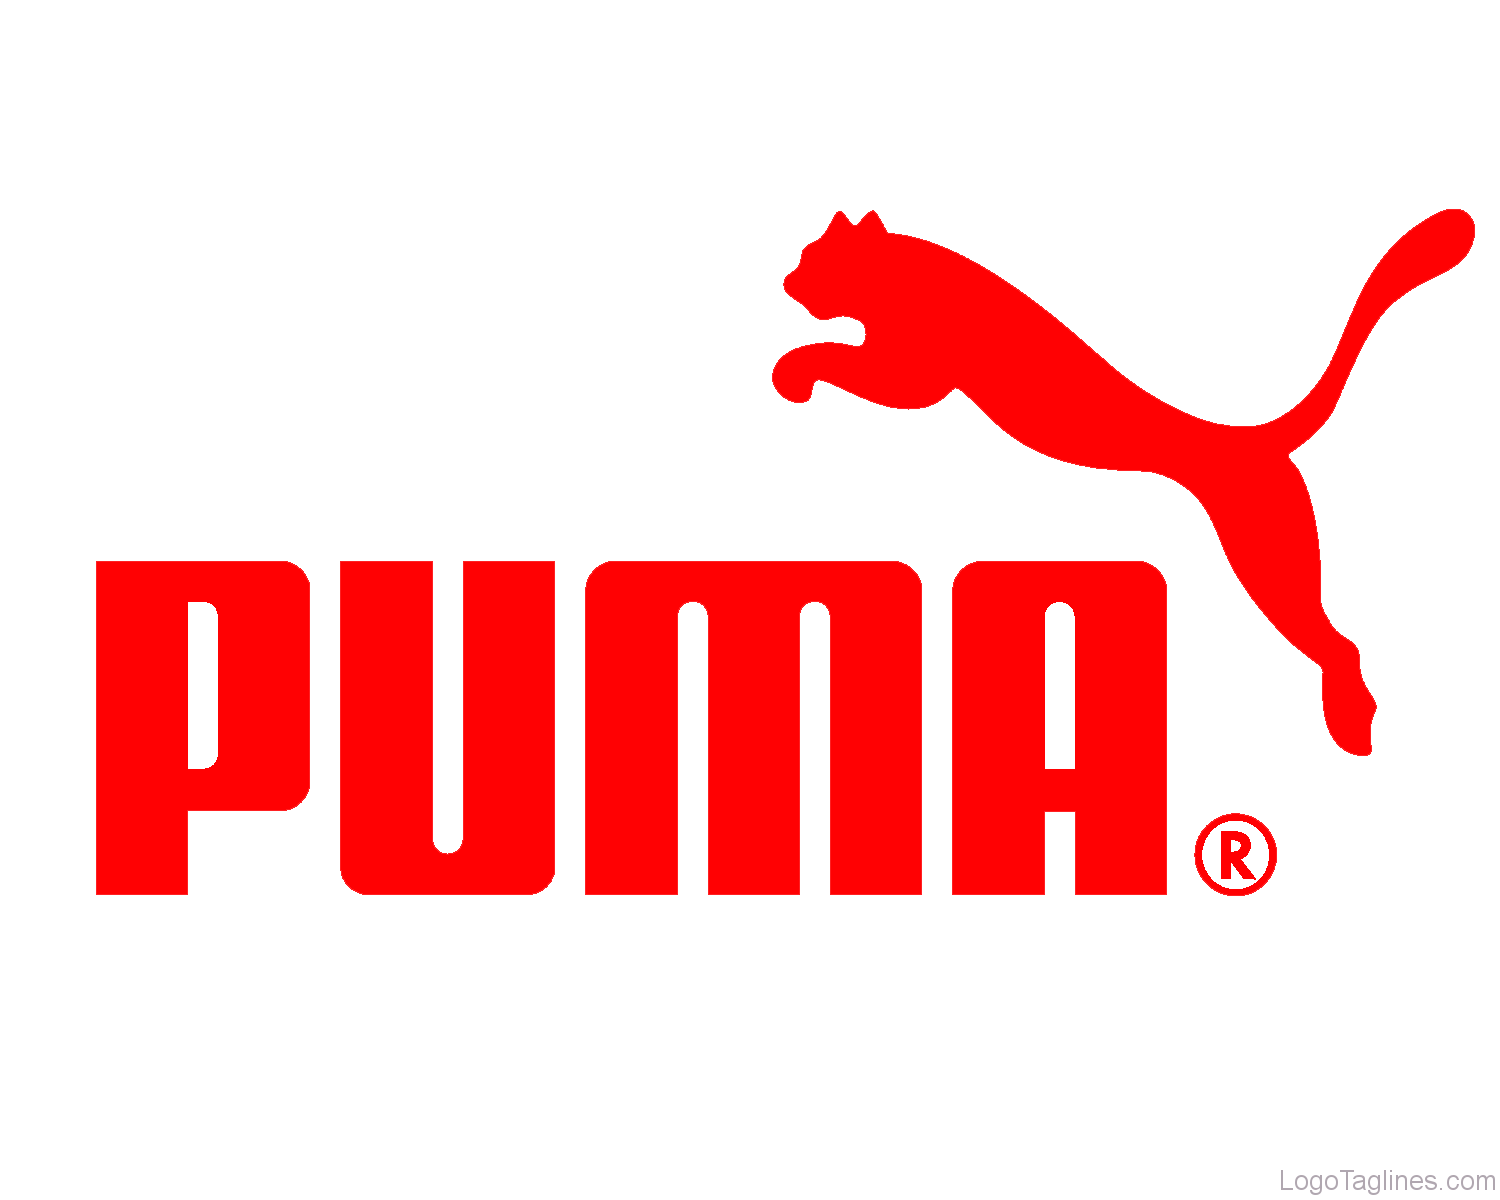 tagline of puma